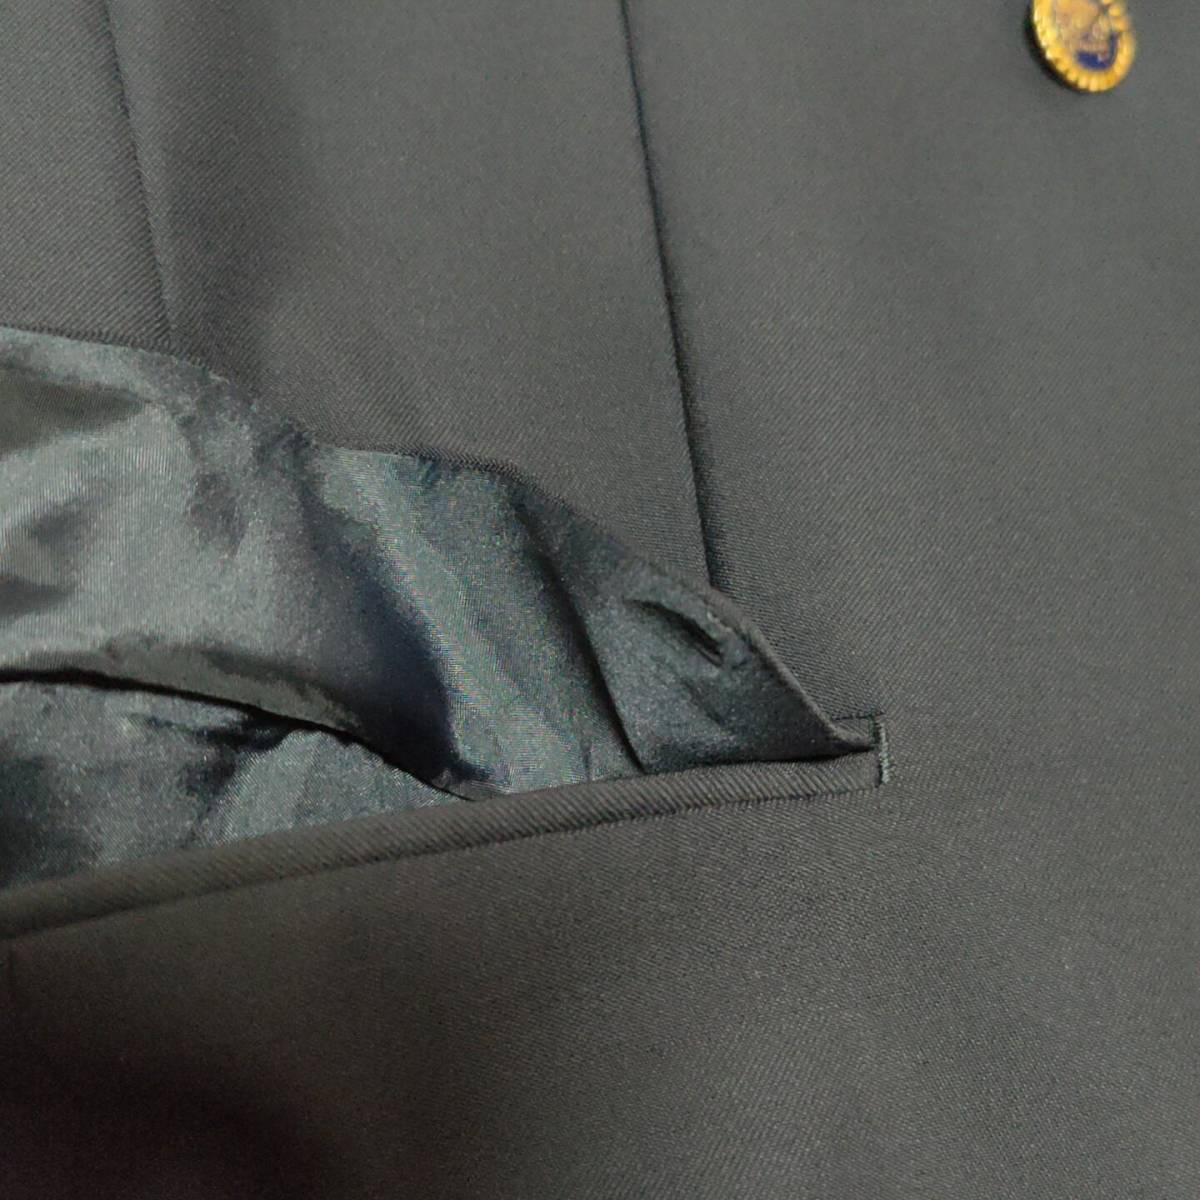 NICOLA PELINI ウールブレザー AB6サイズ ダブル 美品 ポケット 肩パット付き ×1868_画像6